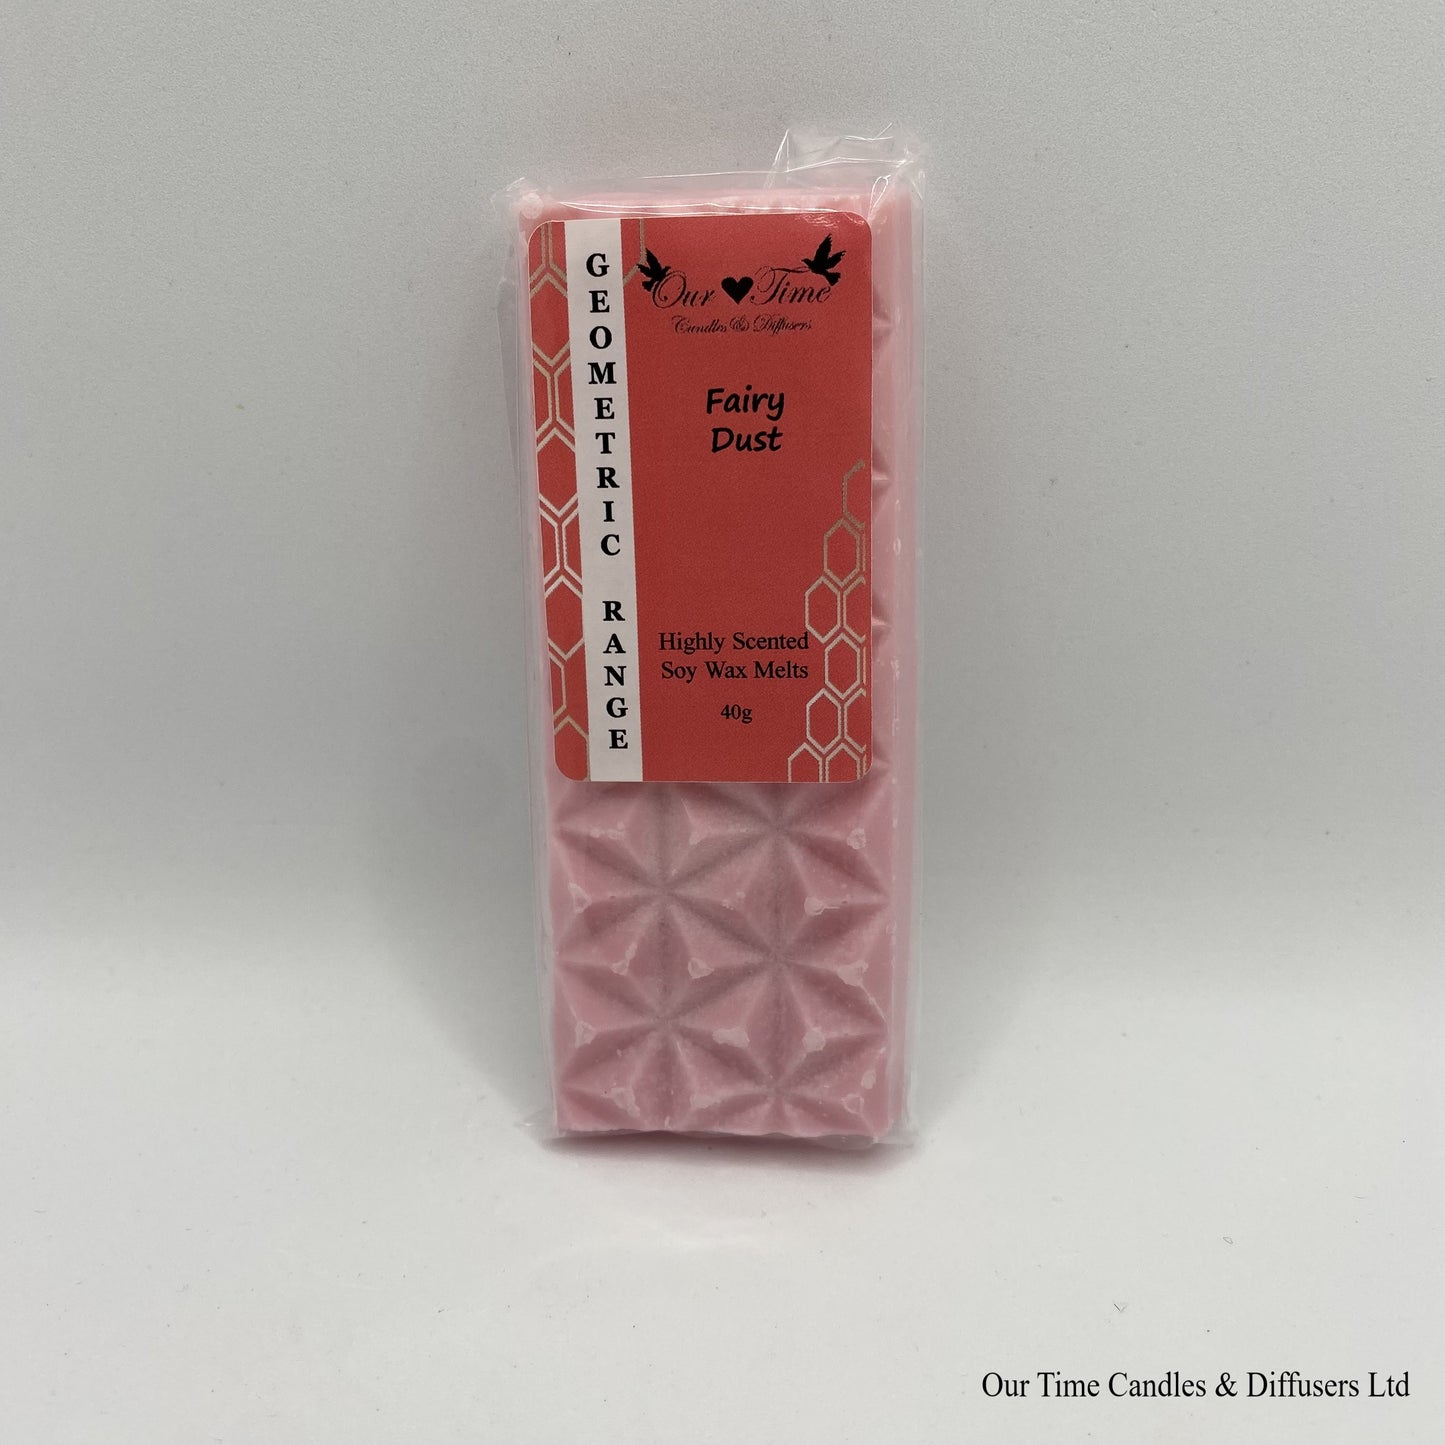 Geometric Wax Melt Bar 40g - Fairy Dust